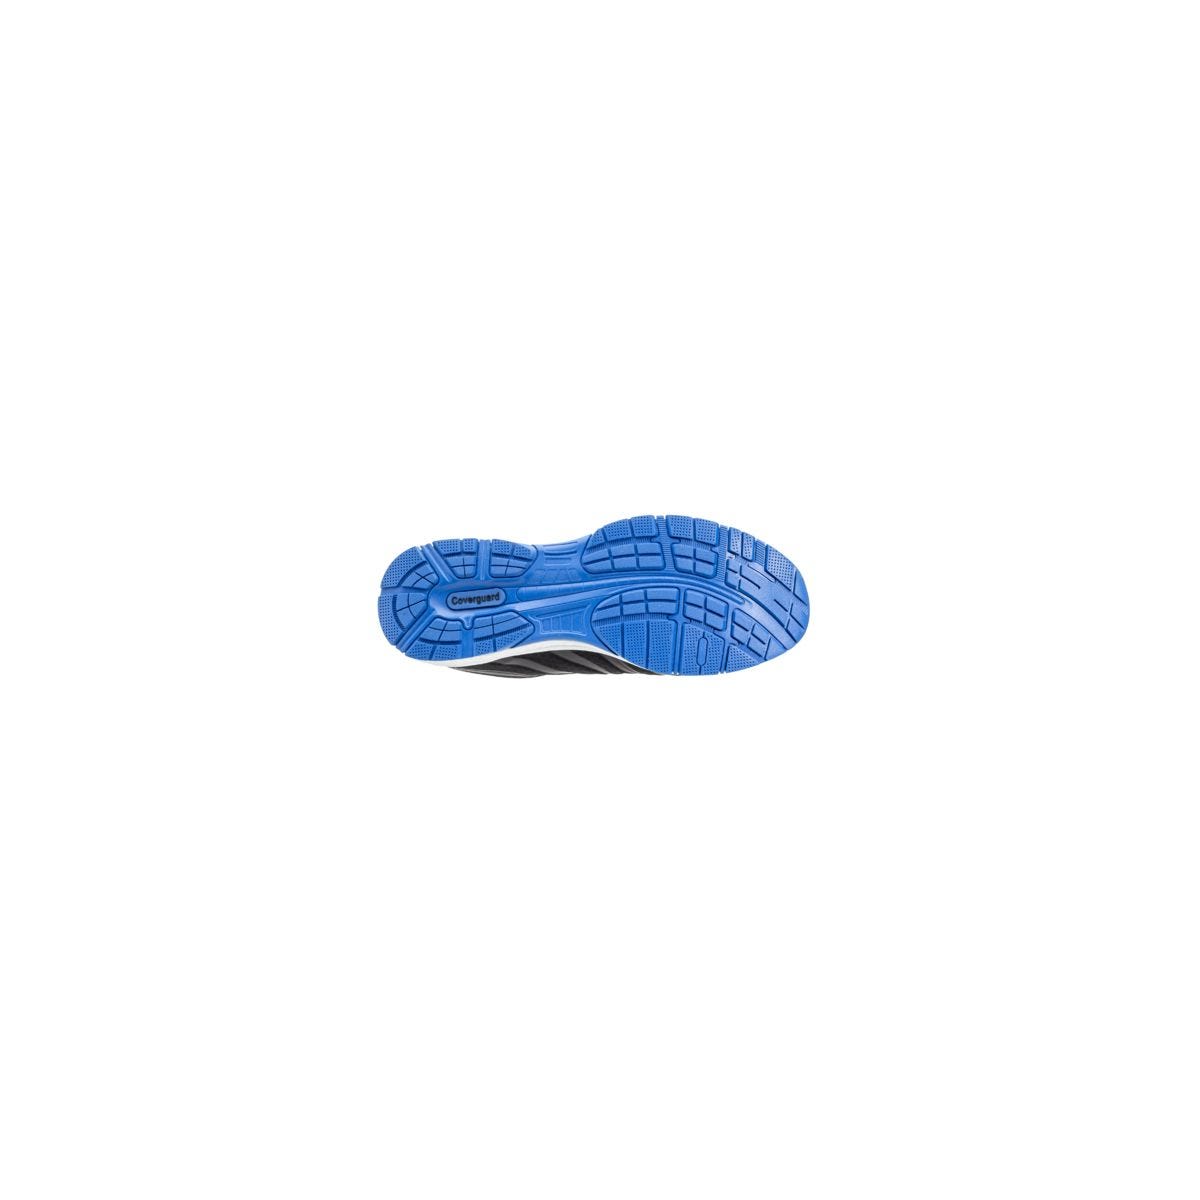 Chaussures de sécurité S1P GALAXITE Basse Maille Noir Bleu ESD - COVERGUARD - Taille 41 1